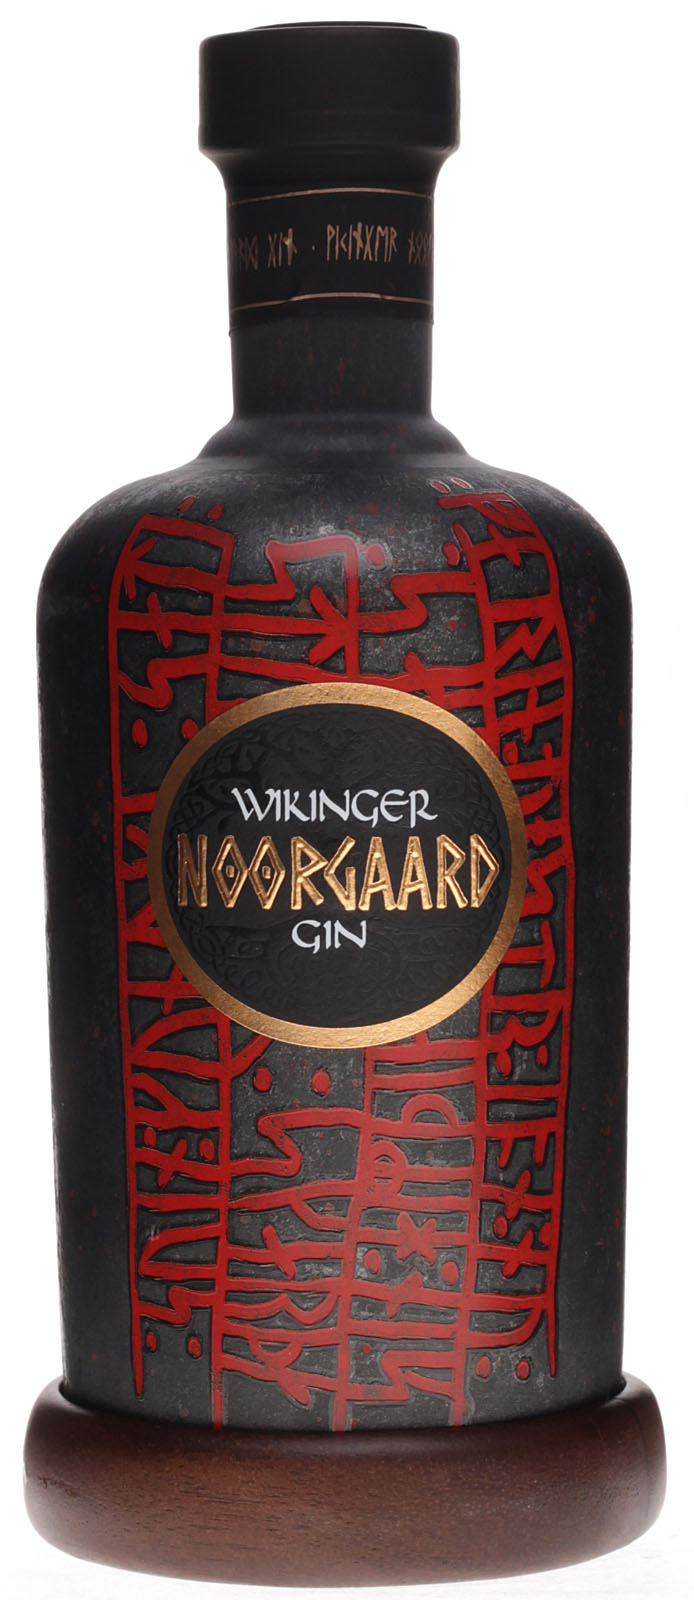 Wikinger Noorgaard Gin günstig und schnell bei uns kauf